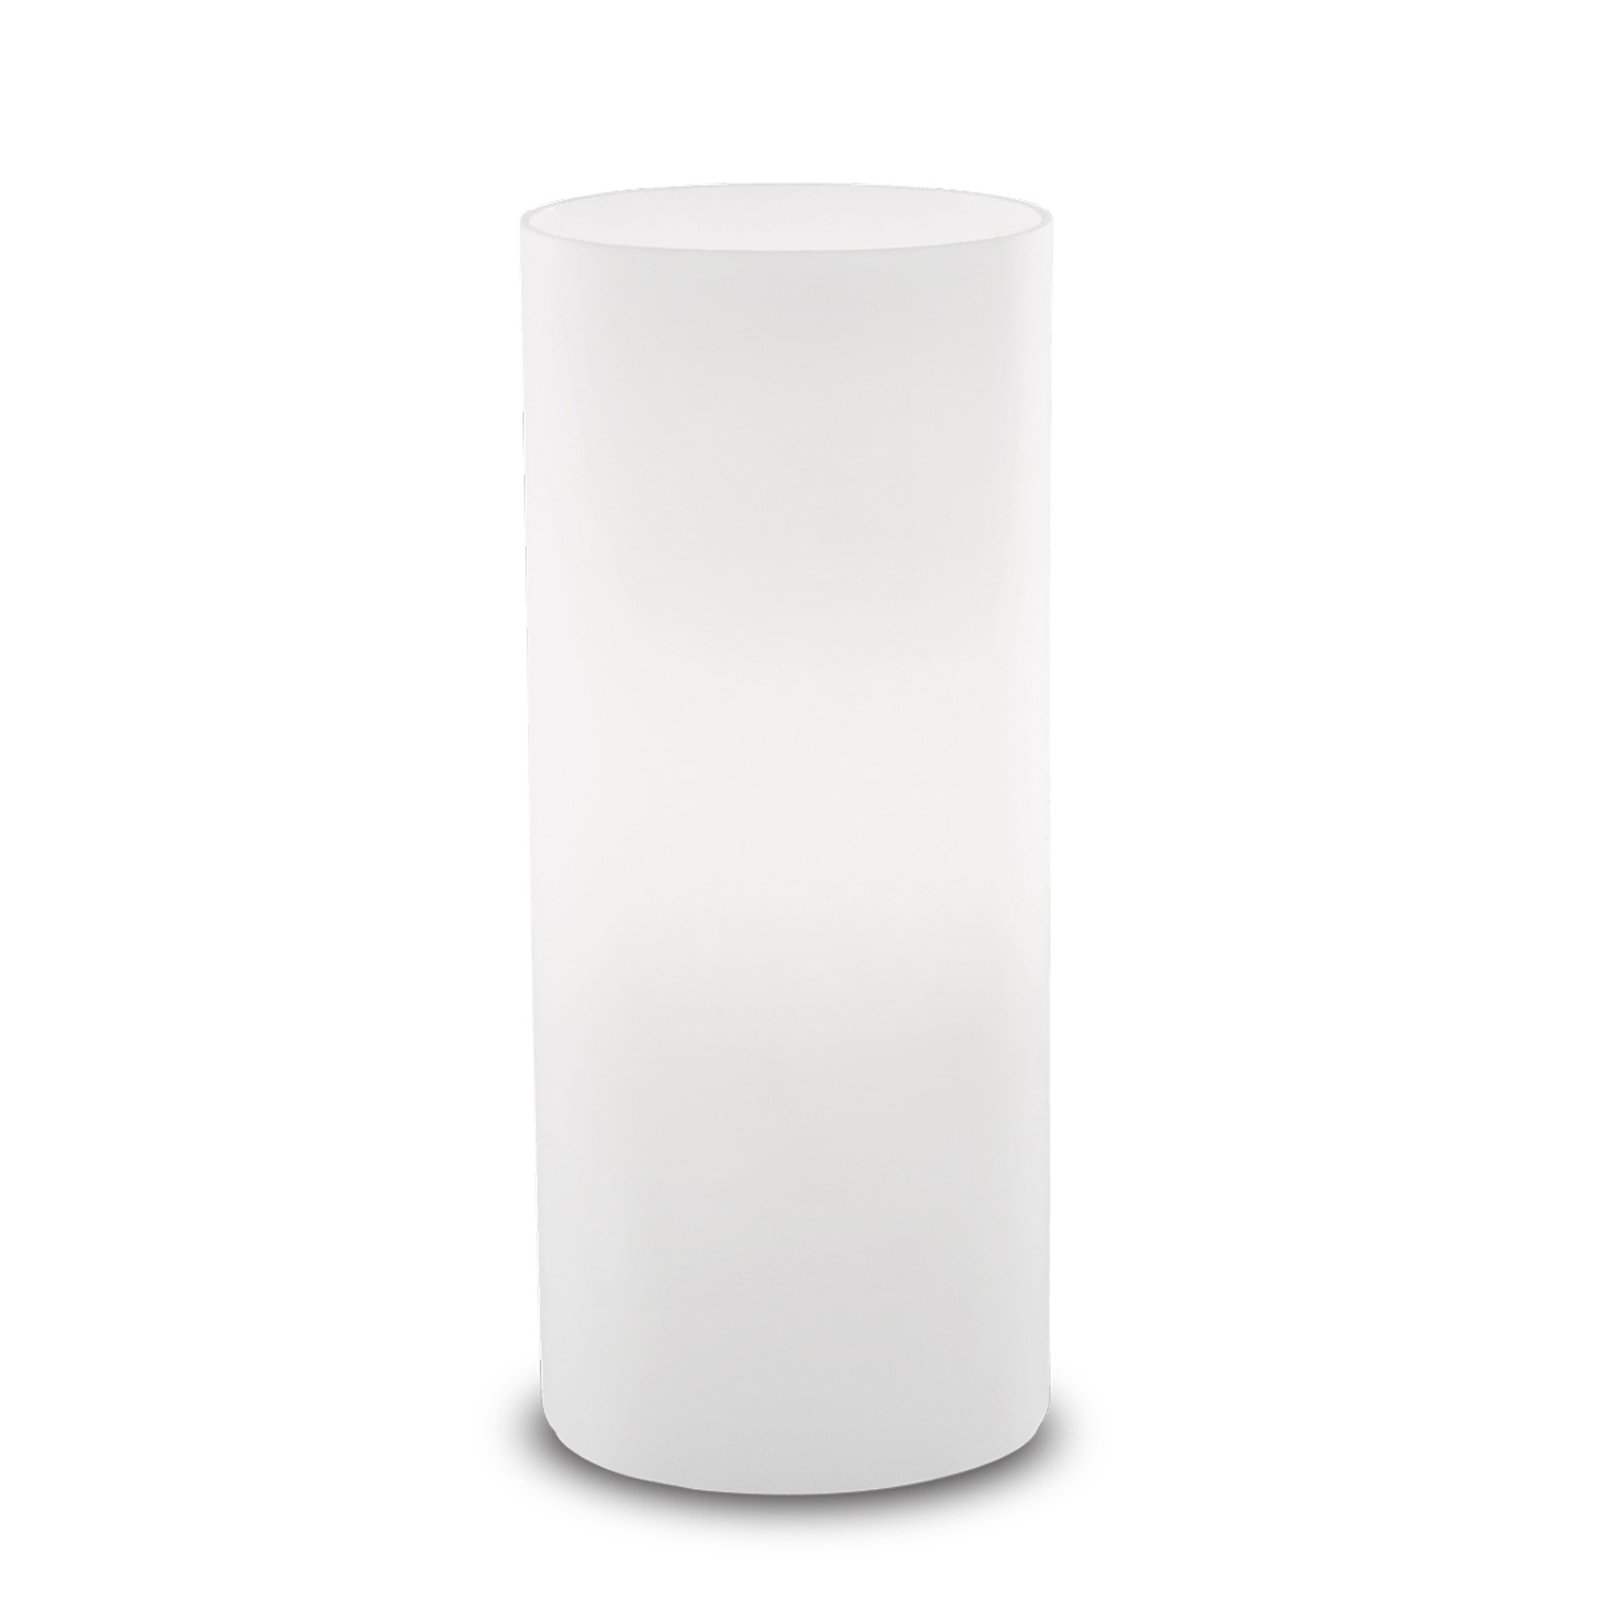 Bordslampa Edo av vitt glas, höjd 23 cm